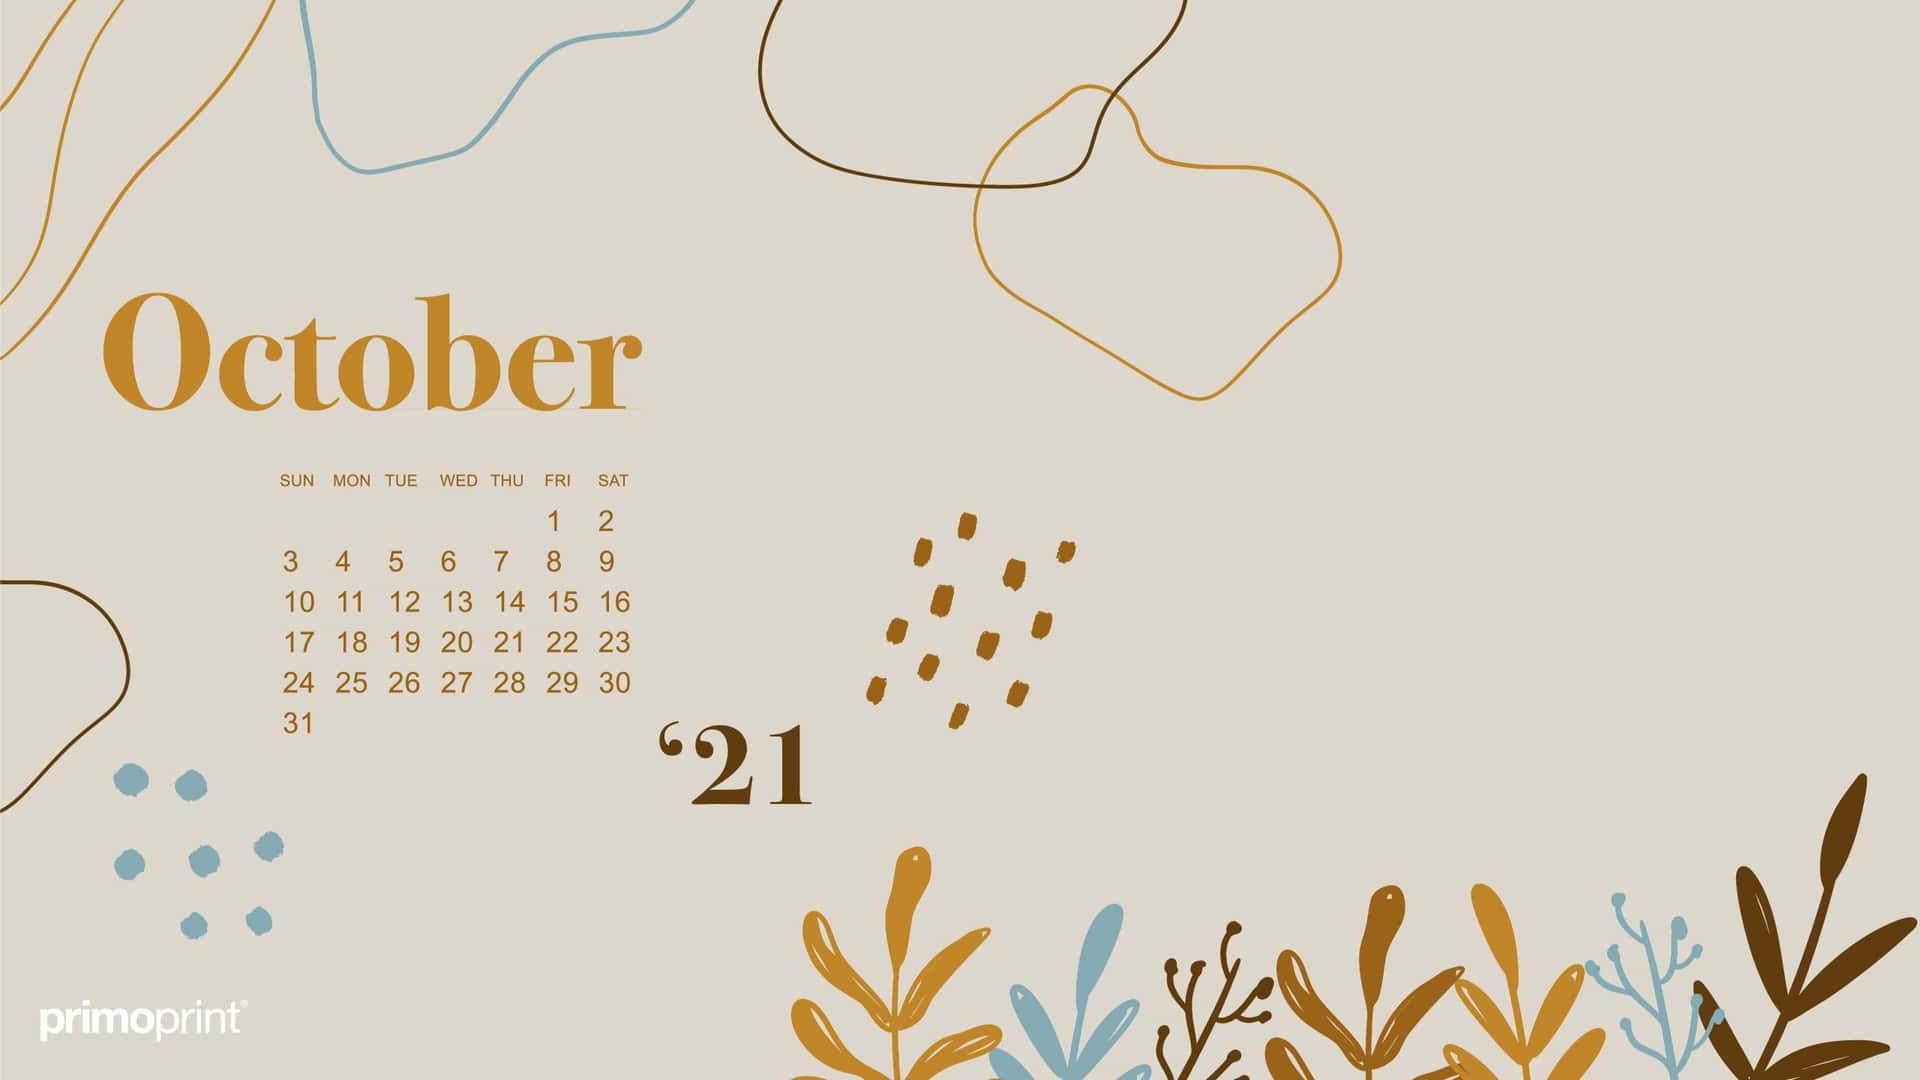 Fondode Pantalla De Calendario De Octubre Con Un Fondo Beige. Fondo de pantalla